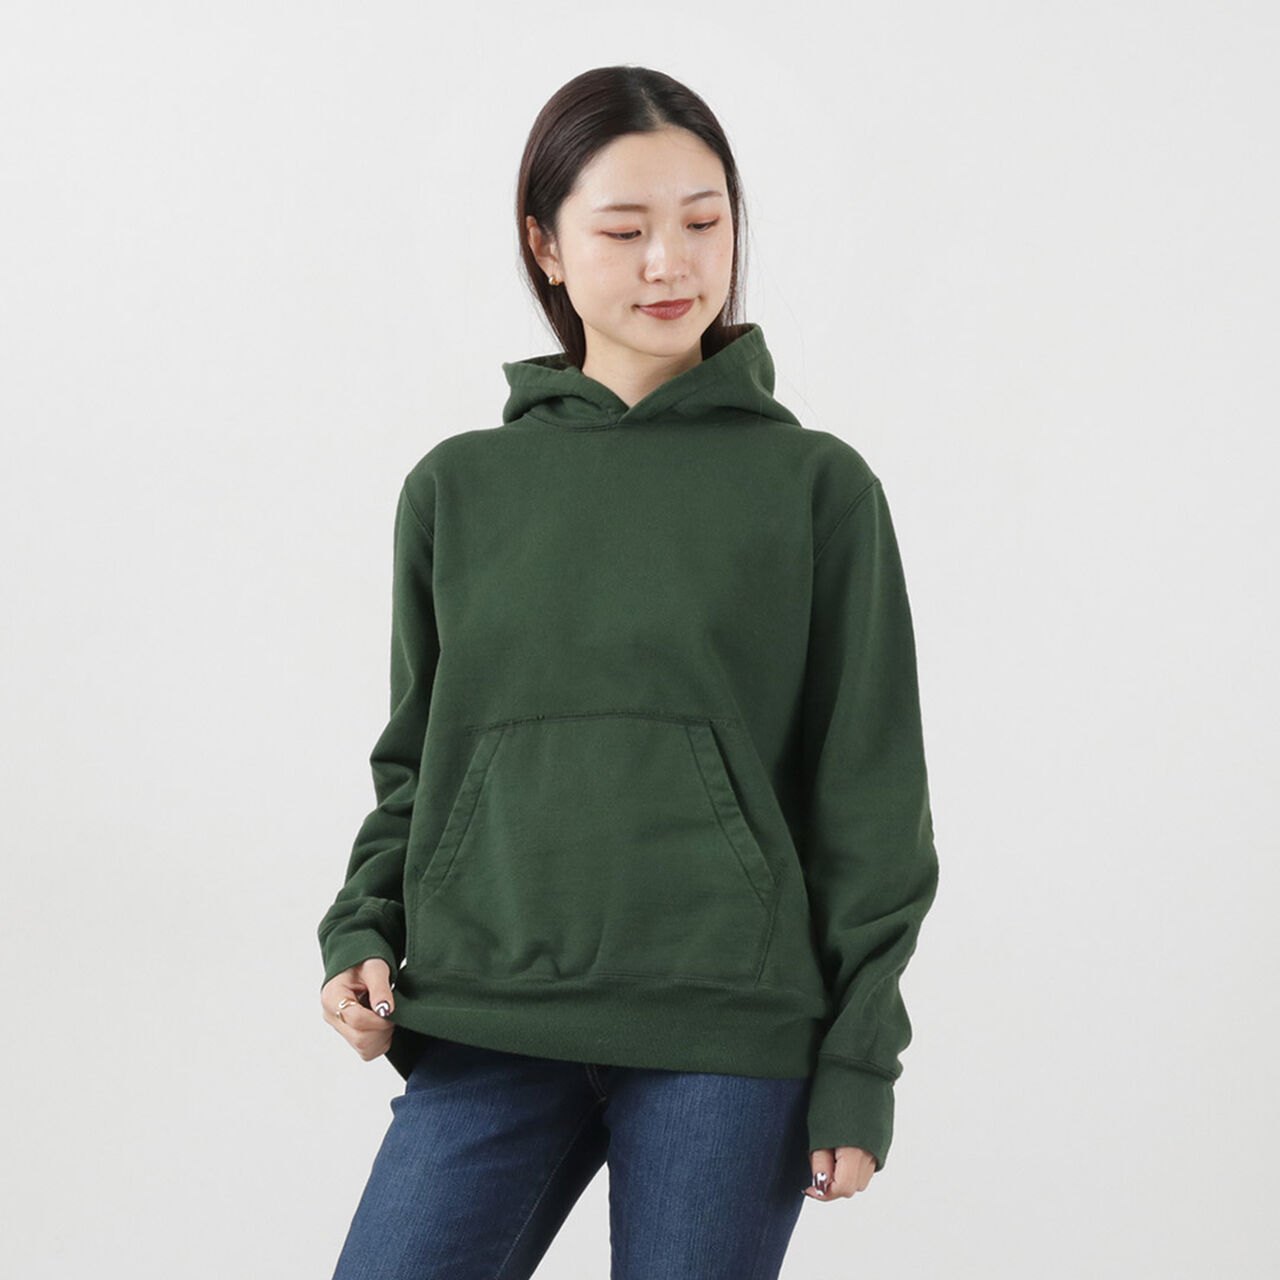 Sweatshirt Hoodie,Green, large image number 0